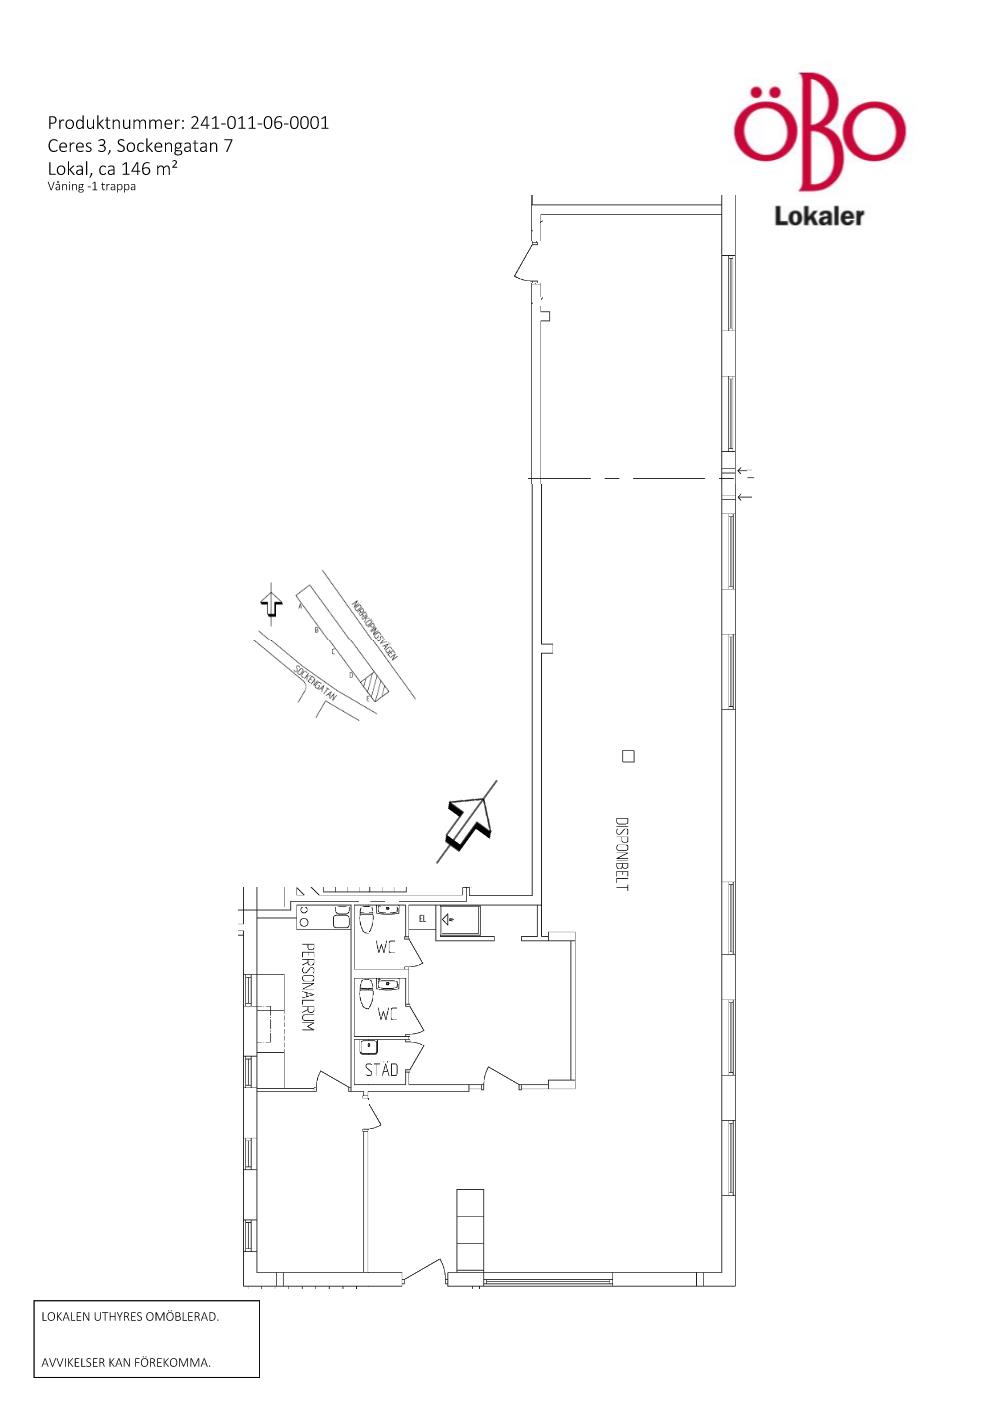 Planskis över lokalen med ett större rum, personalrum, två wc och städskrubb.